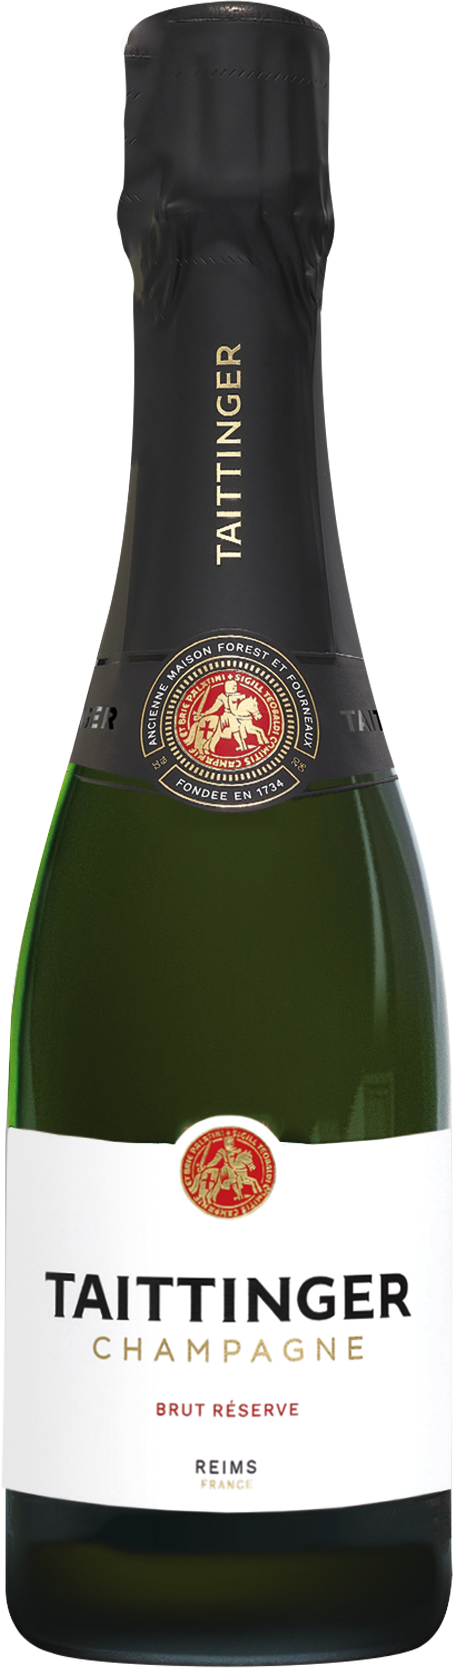 Champagne Taittinger - Brut Réserve